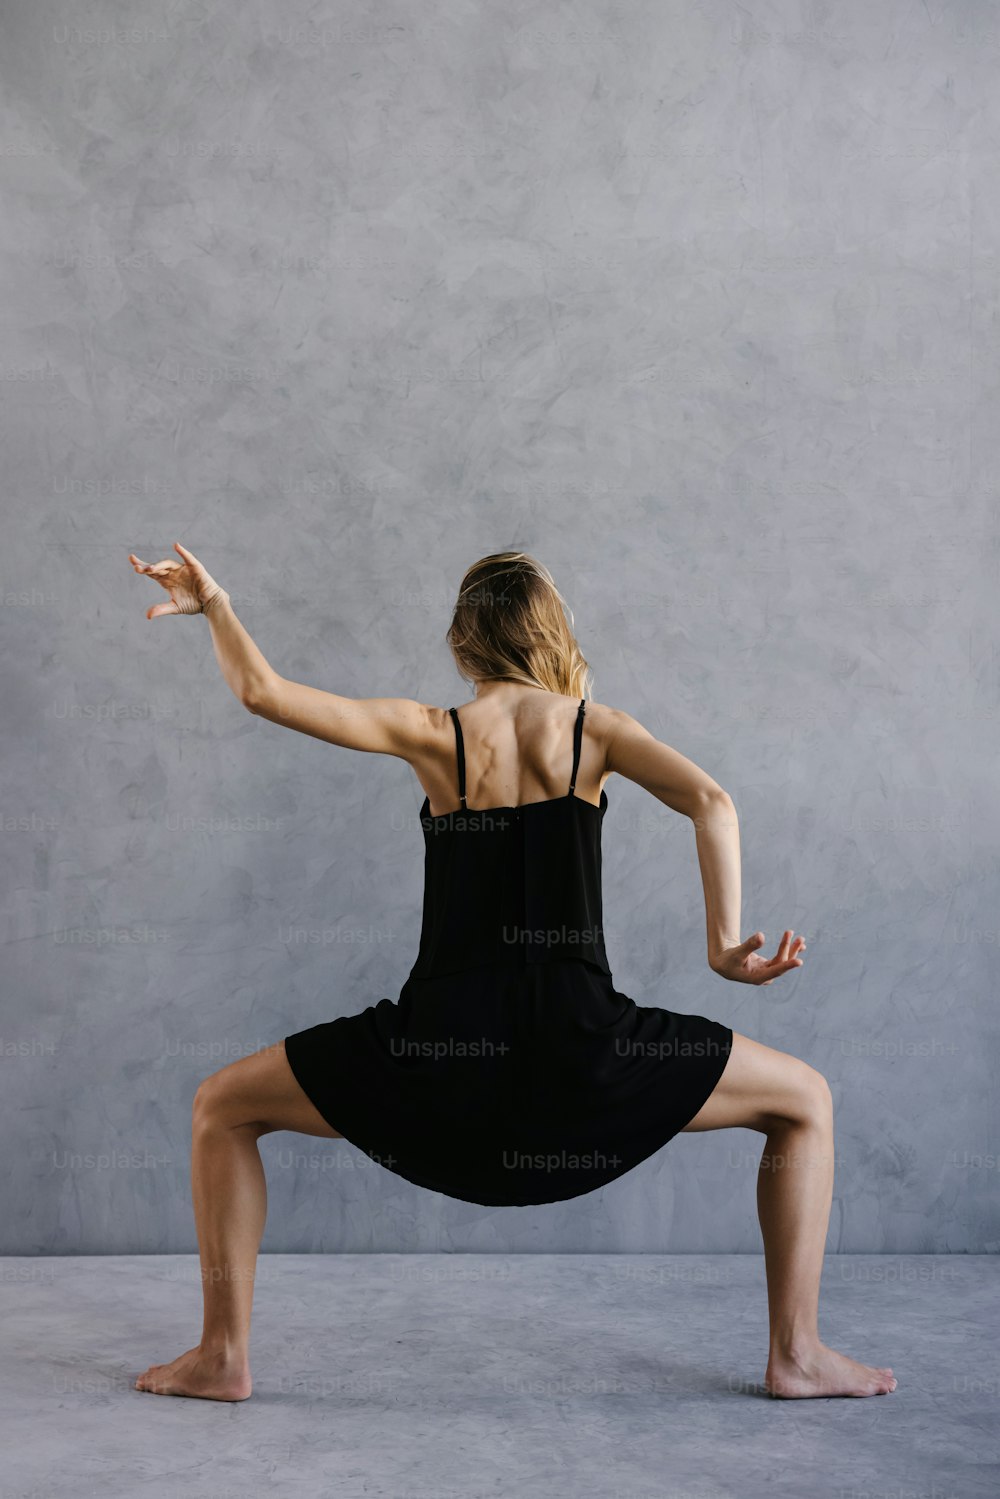 Eine Frau in einem schwarzen Kleid macht eine Yoga-Pose